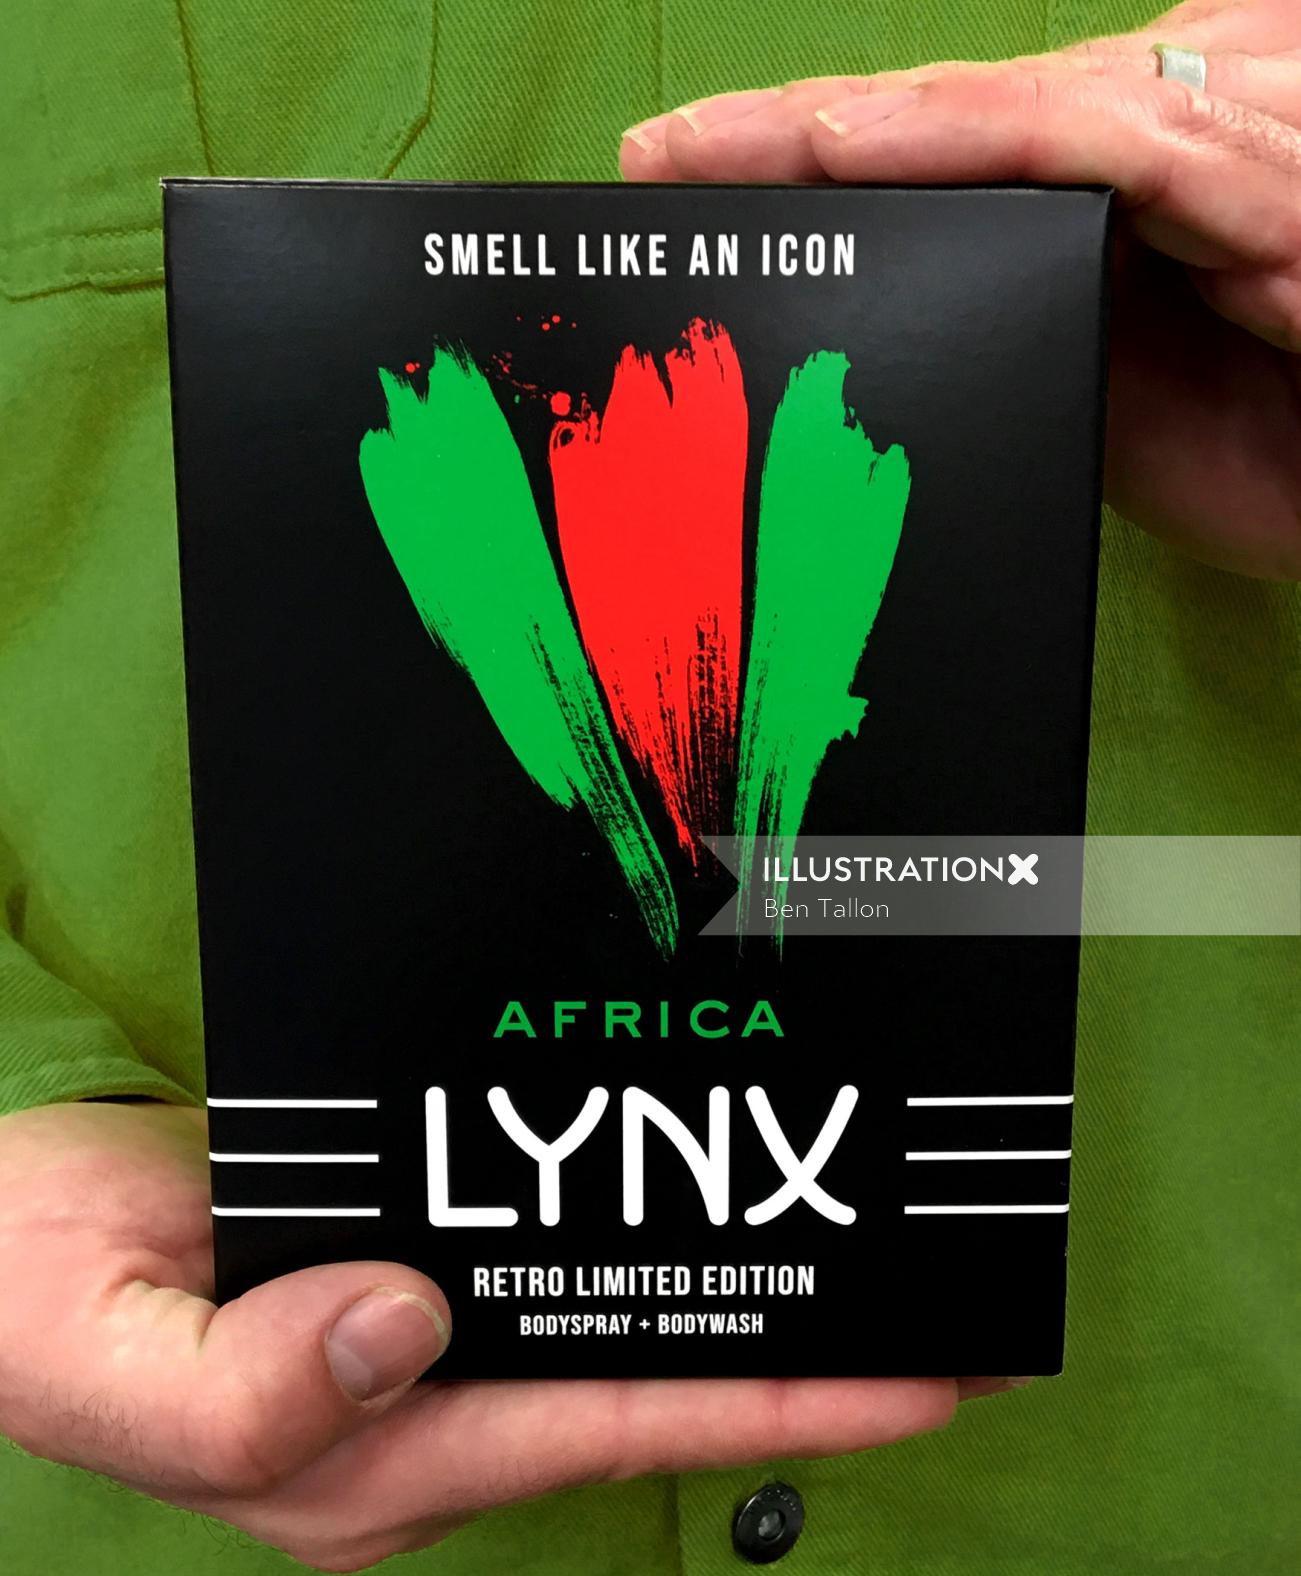 LYNX / AX 限定版ボックスのデザインを一新